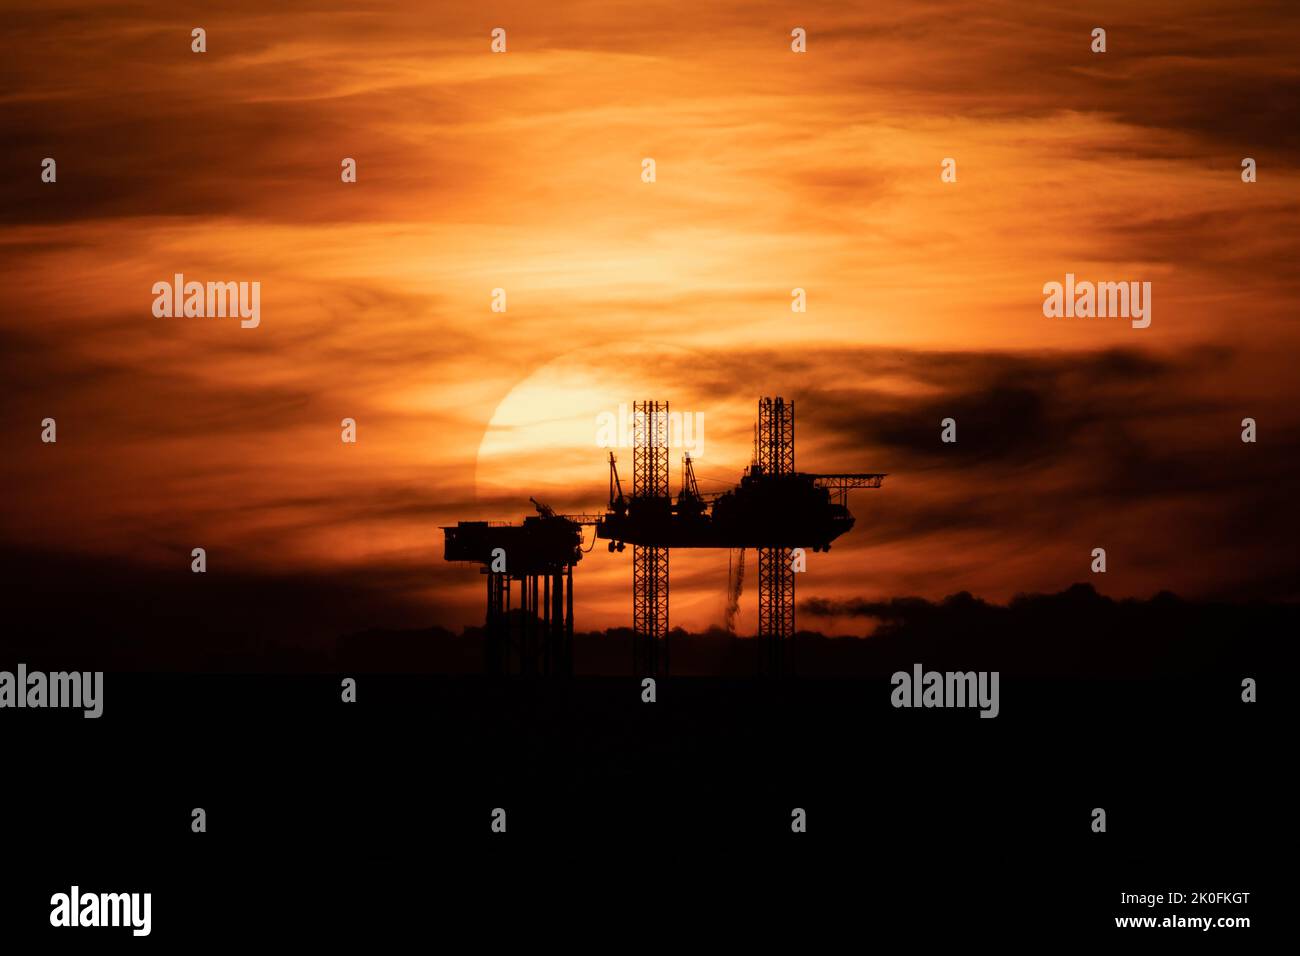 Puesta de sol de plataformas petrolíferas, puesta de sol sobre la plataforma de satélites Lennox en el mar de Irlanda, parte de las plataformas petrolíferas y de gas del complejo Douglas en la bahía de Liverpool, Inglaterra, Reino Unido Foto de stock